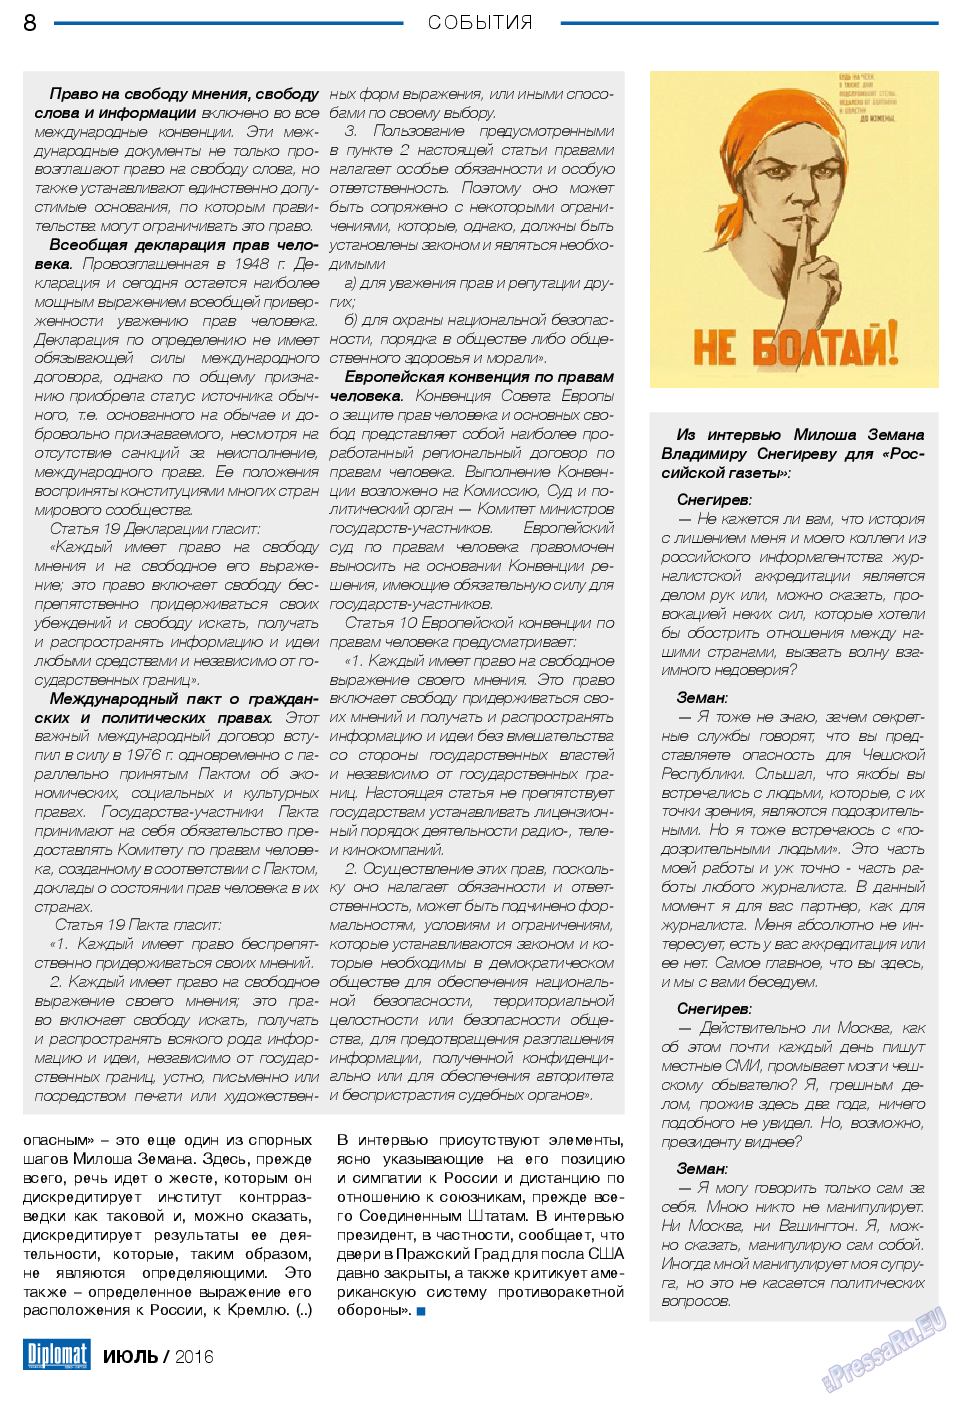 Diplomat, газета. 2016 №82 стр.8